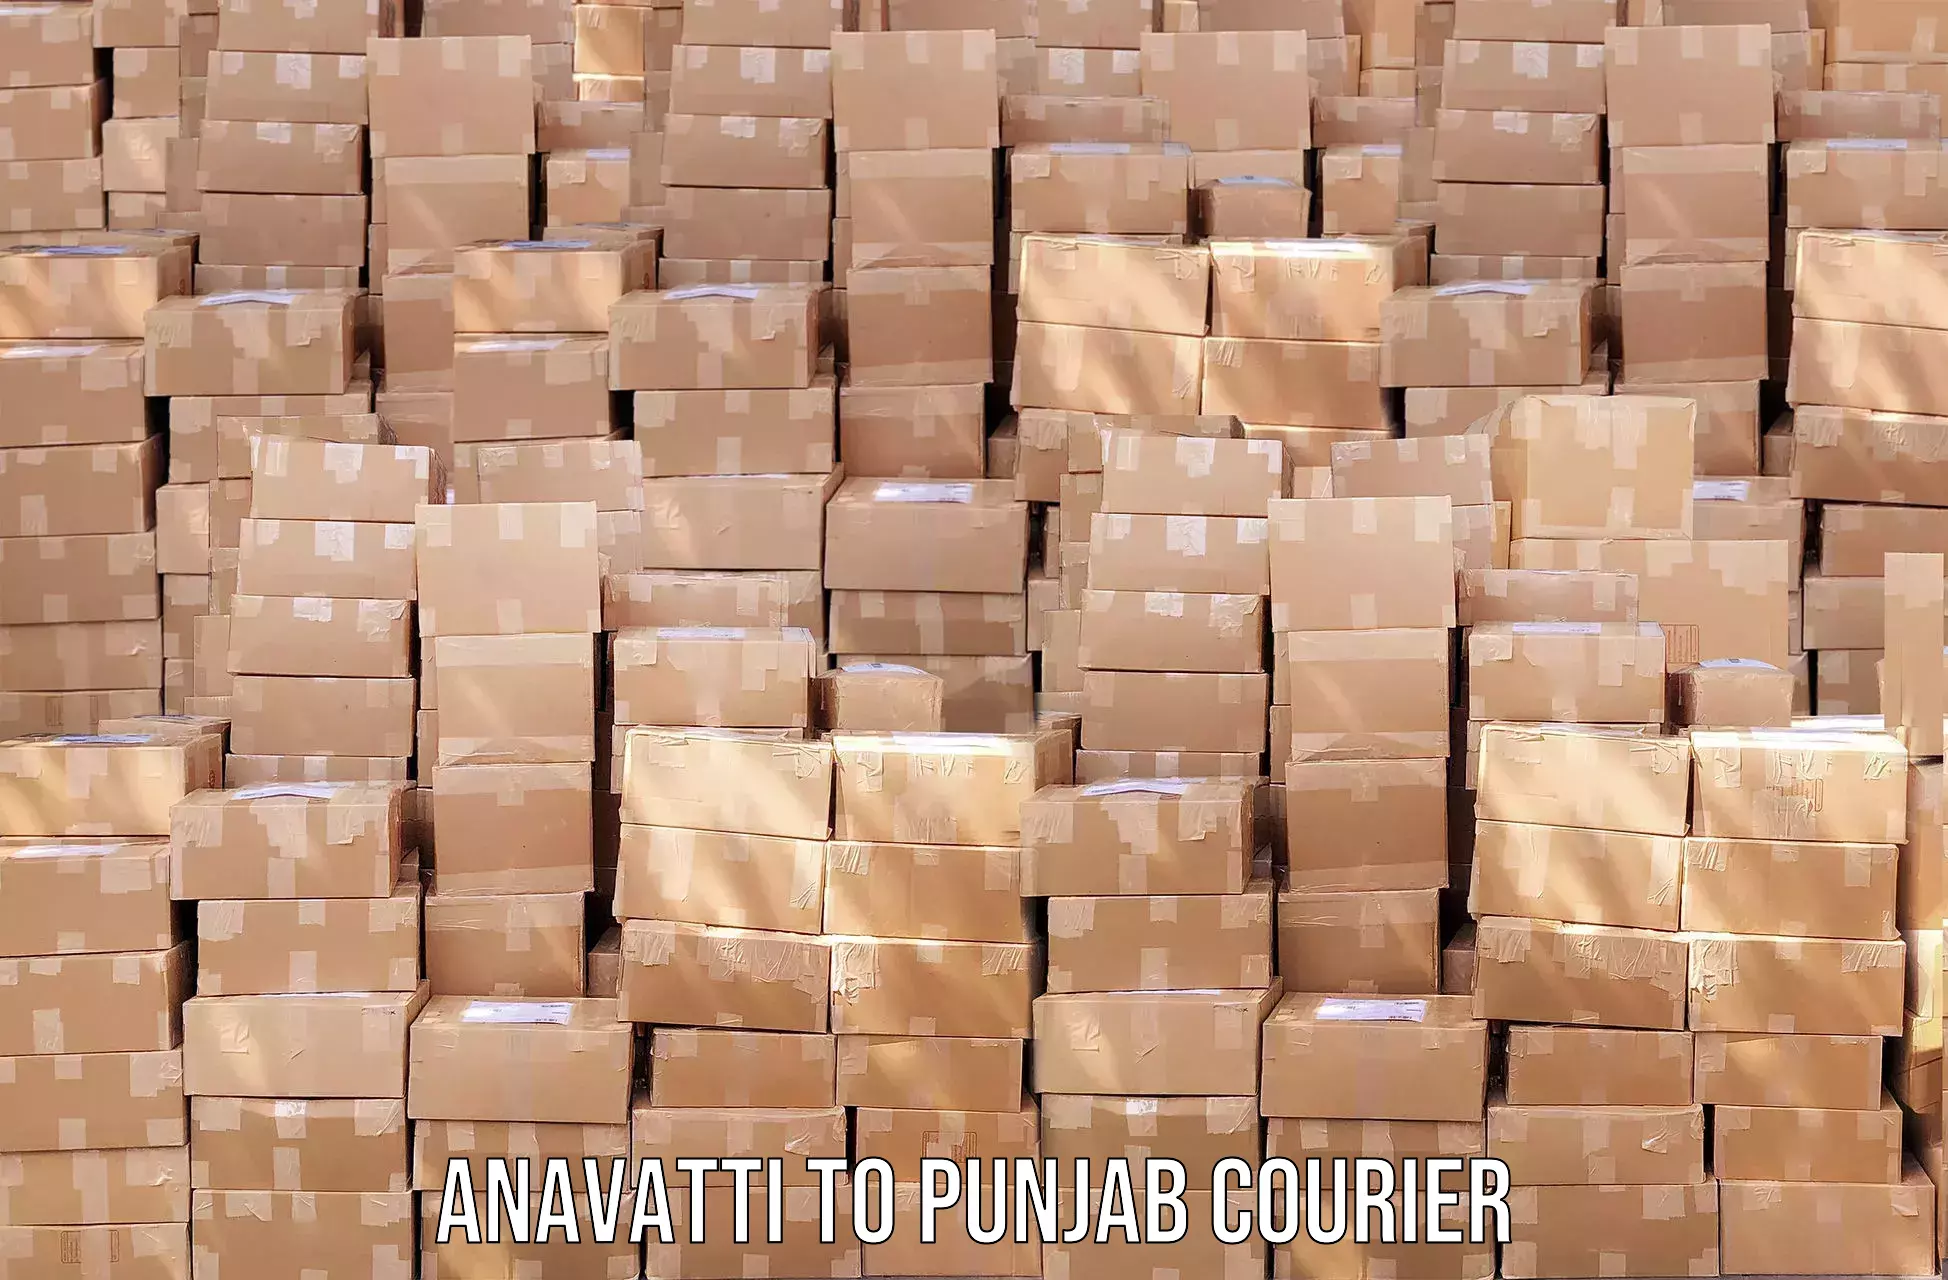 Bulk courier orders Anavatti to Mandi Gobindgarh